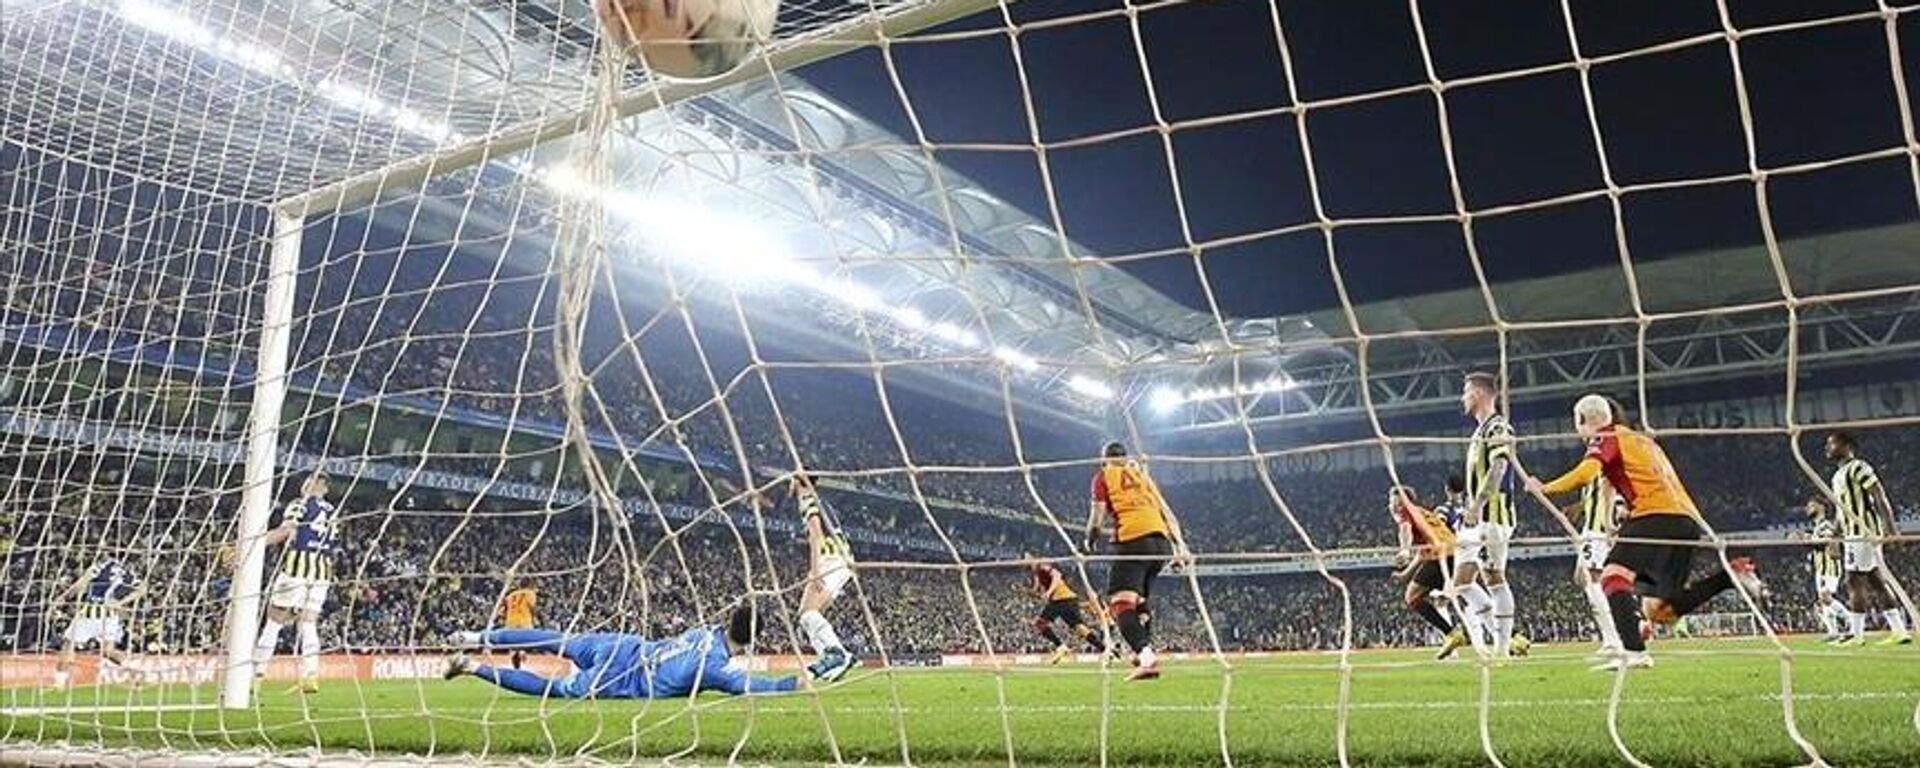 Fenerbahçe, Beşiktaş'ı 7 maç sonra mağlup etti - Haber 1